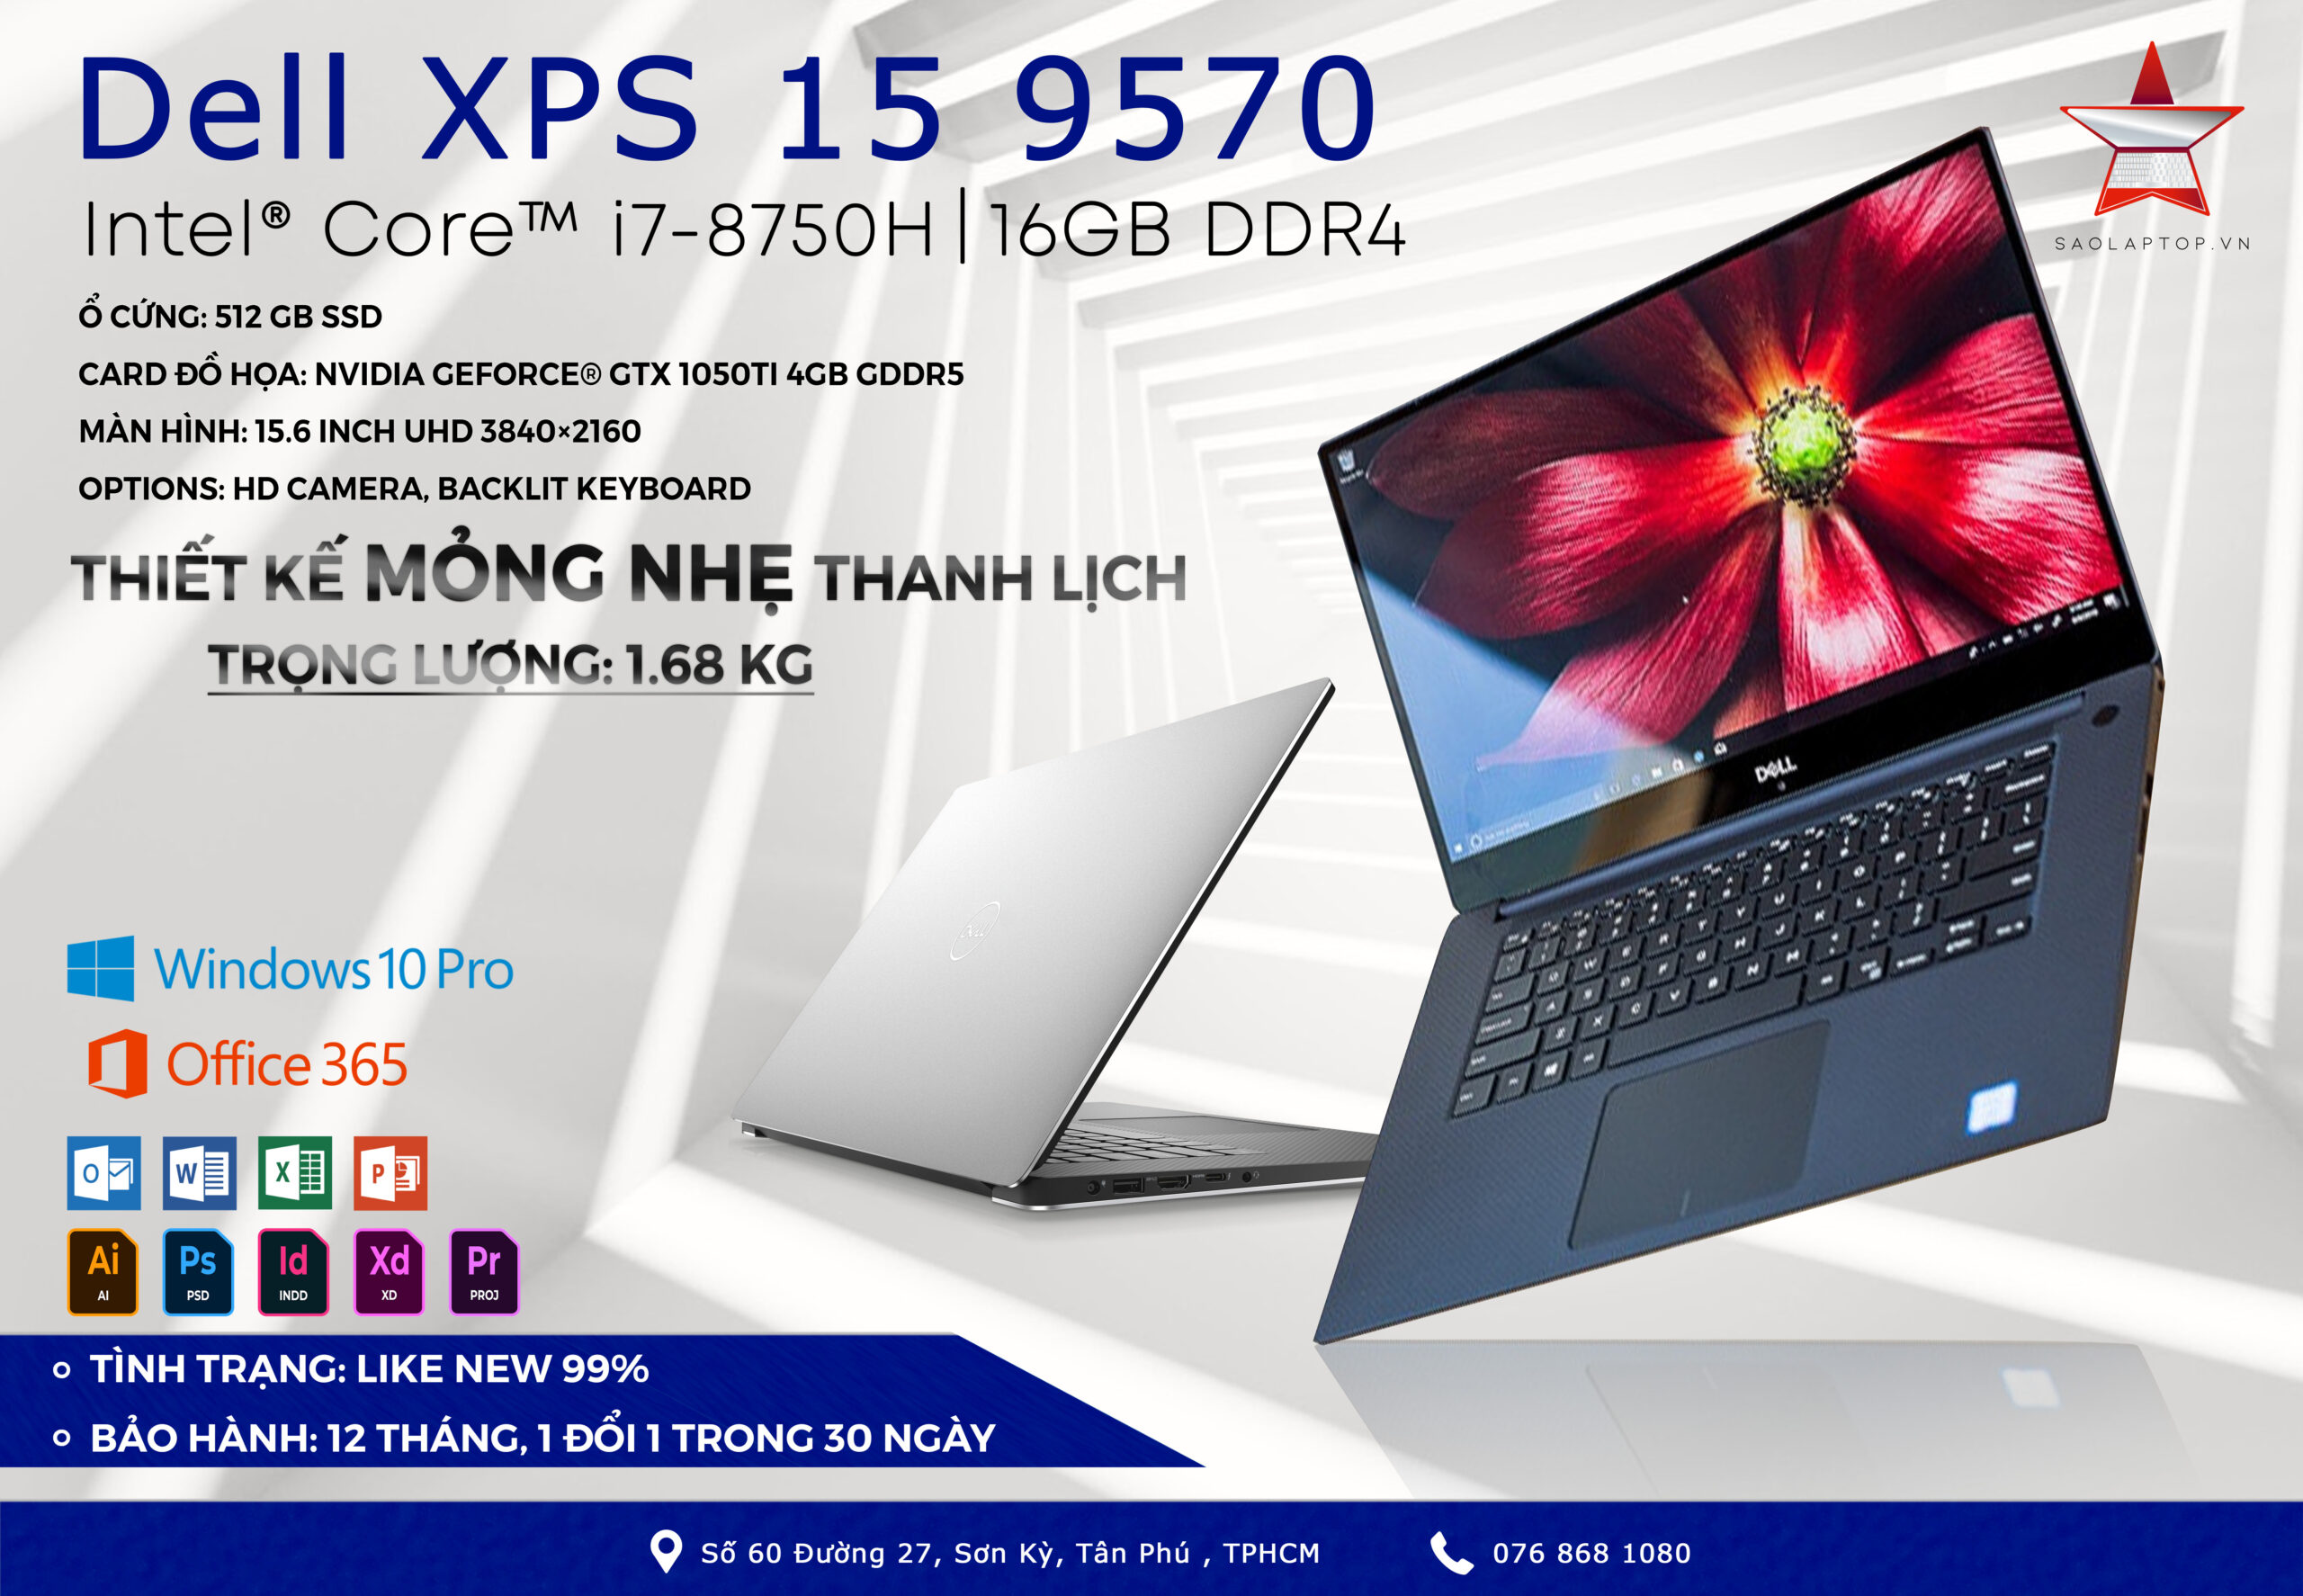 Dell XPS 15 9570 Core i7-8750H RAM 16G SSD 512G GTX 1050Ti 4G 4K